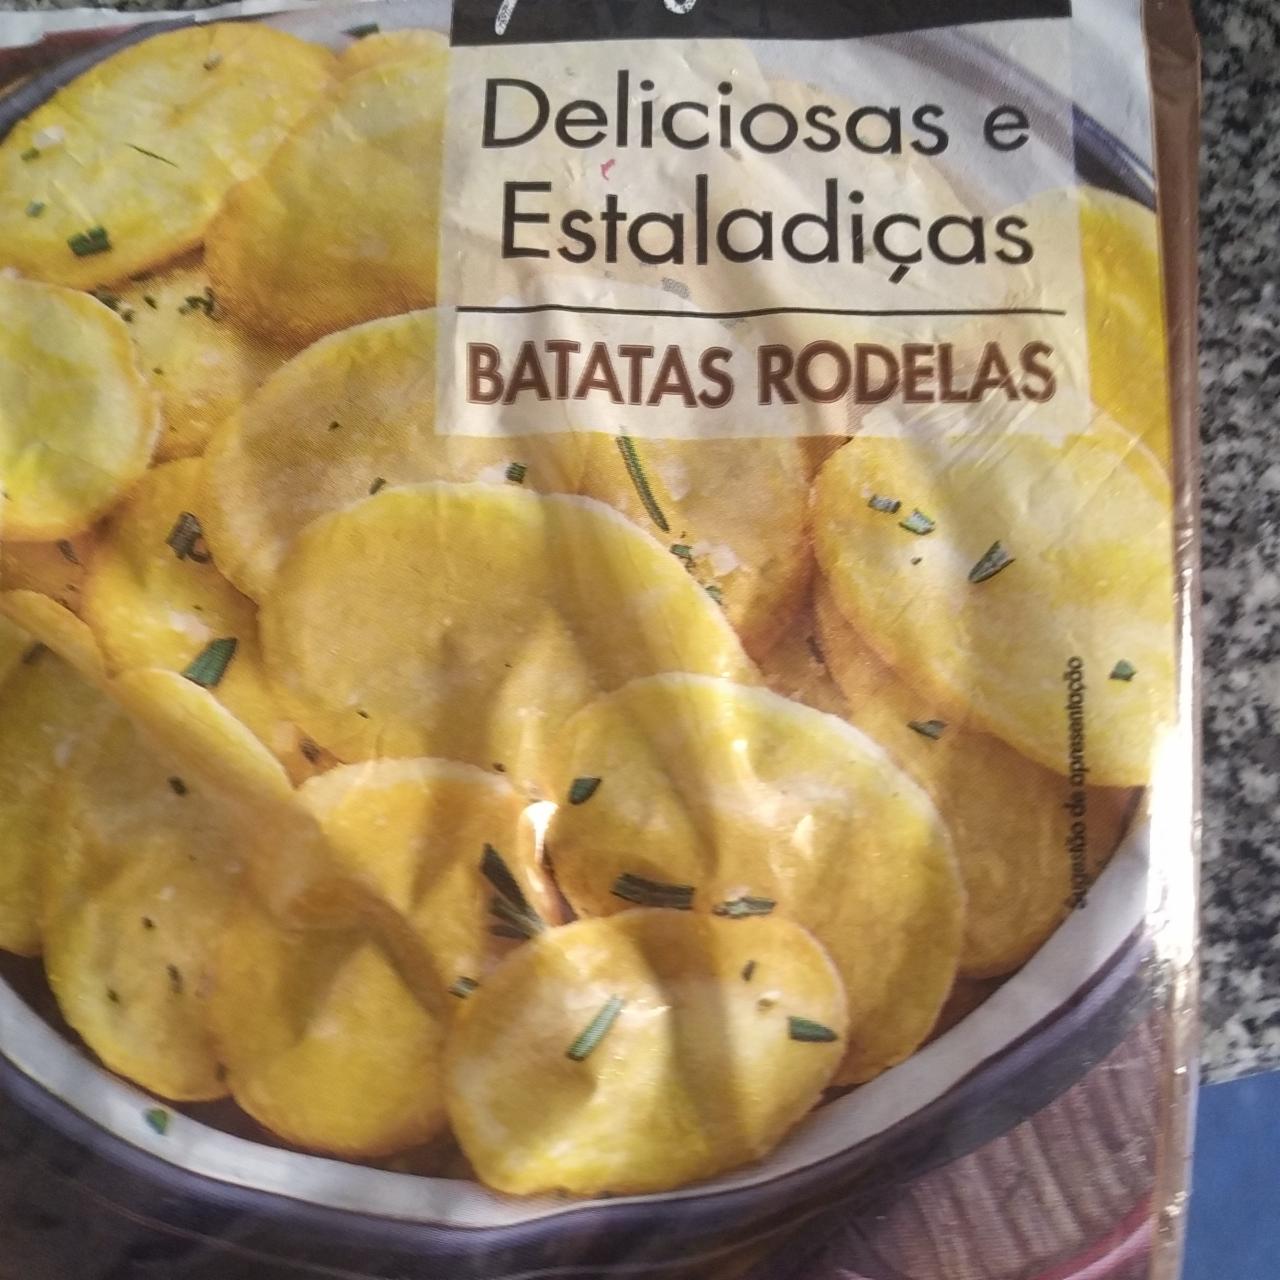 Fotografie - Deliciosas e Estaladicas Batatas rodelas